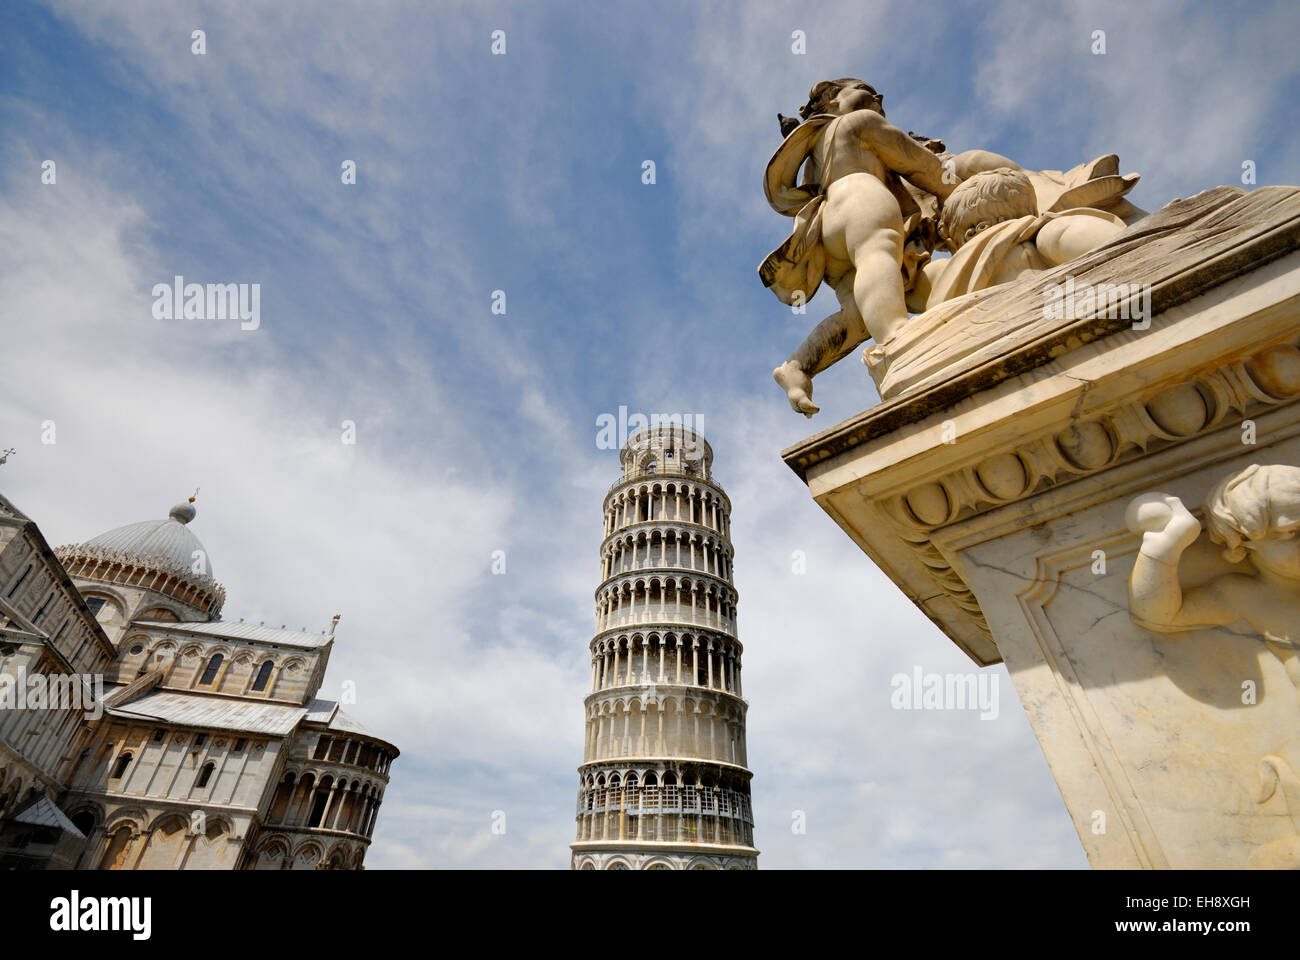 Schiefe Turm von Pisa mit Statue, Pizza del Miracoli, Pisa, Italien Stockfoto